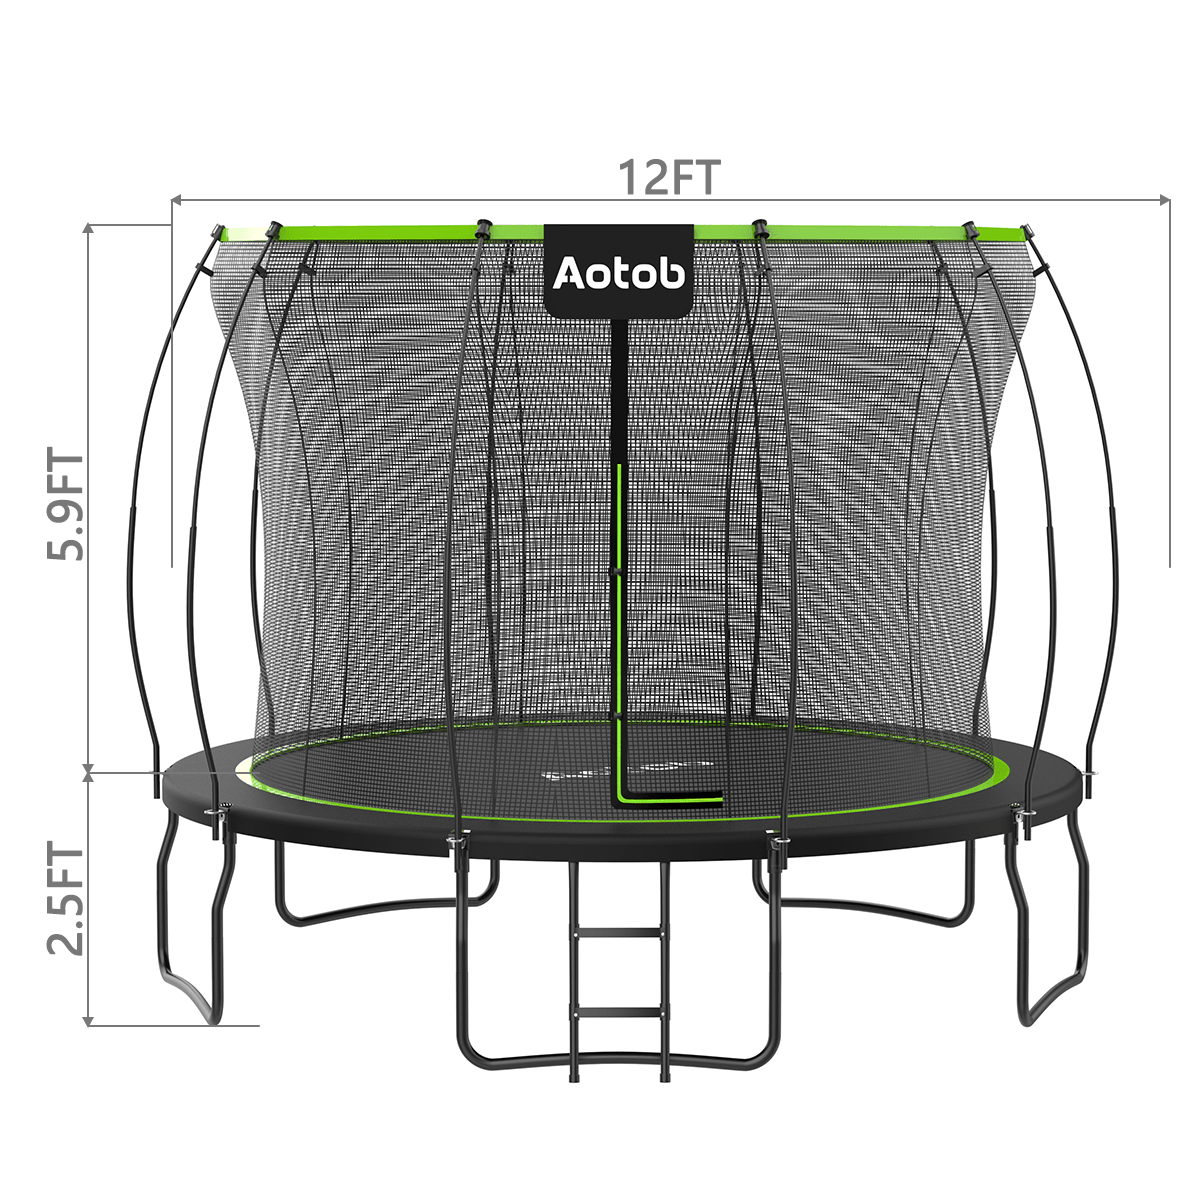 aotob trampoline size